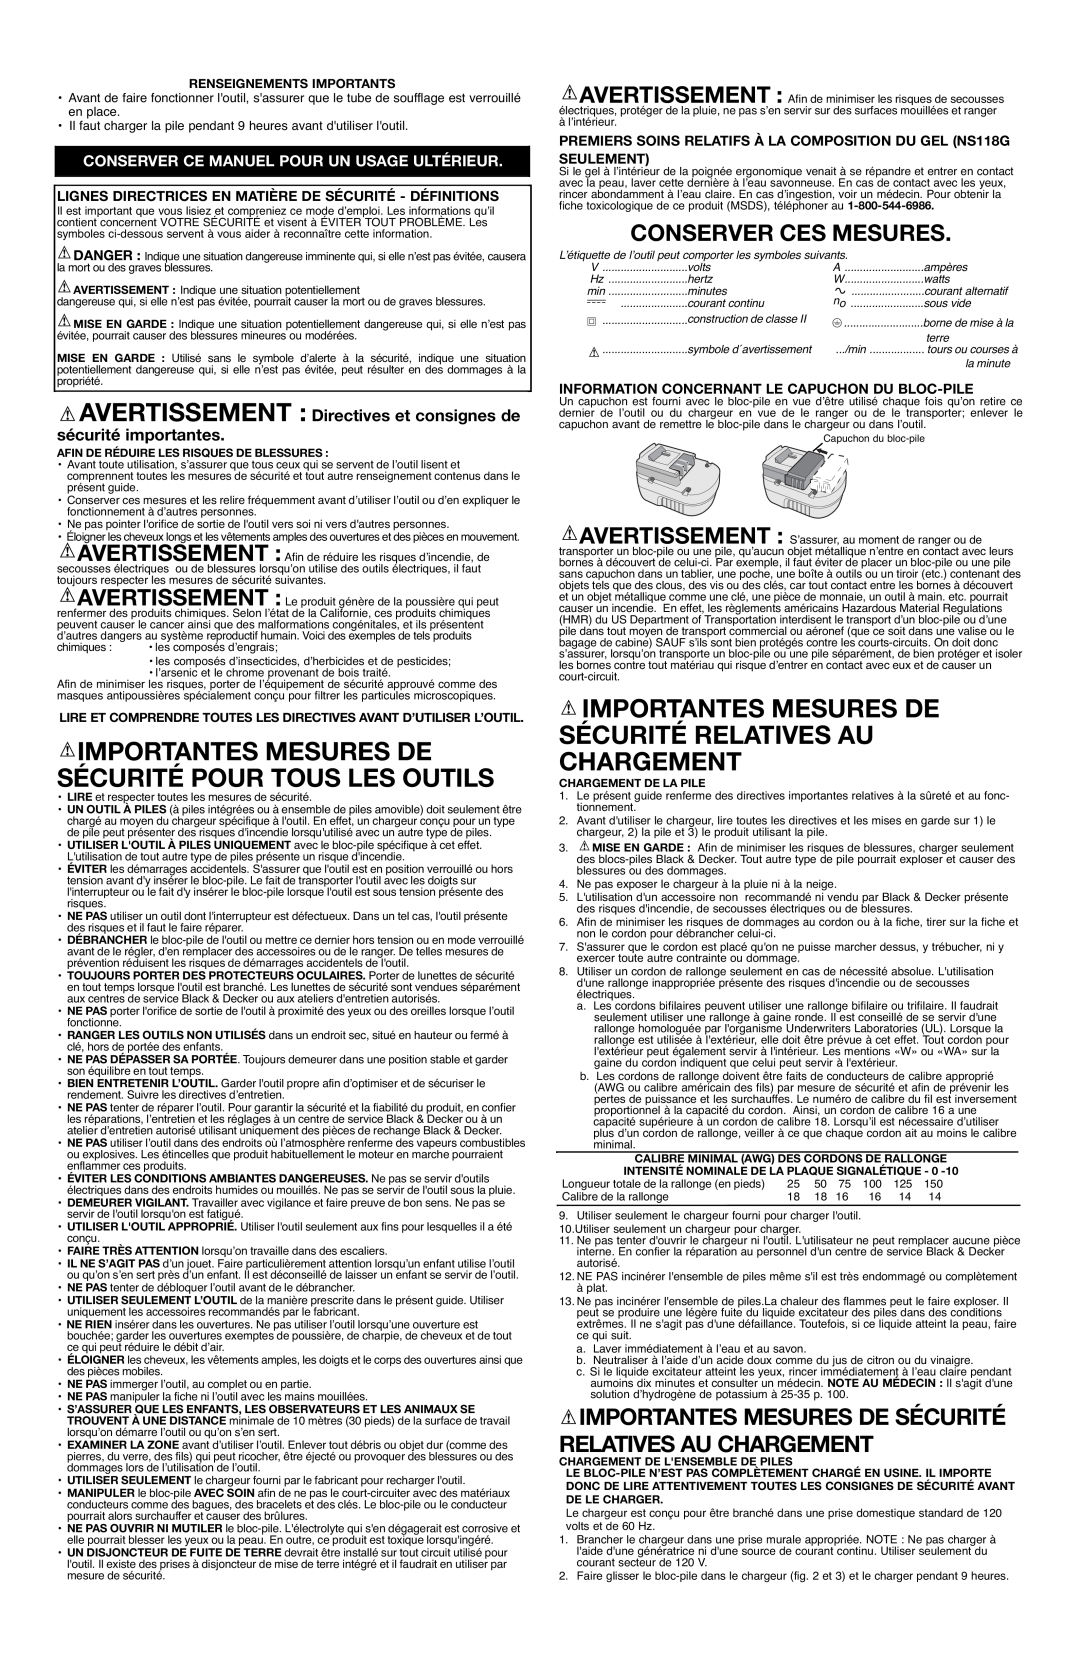 Black & Decker NS118L, NS118G Importantes Mesures De Sécurité Relatives Au Chargement, Conserver Ces Mesures 